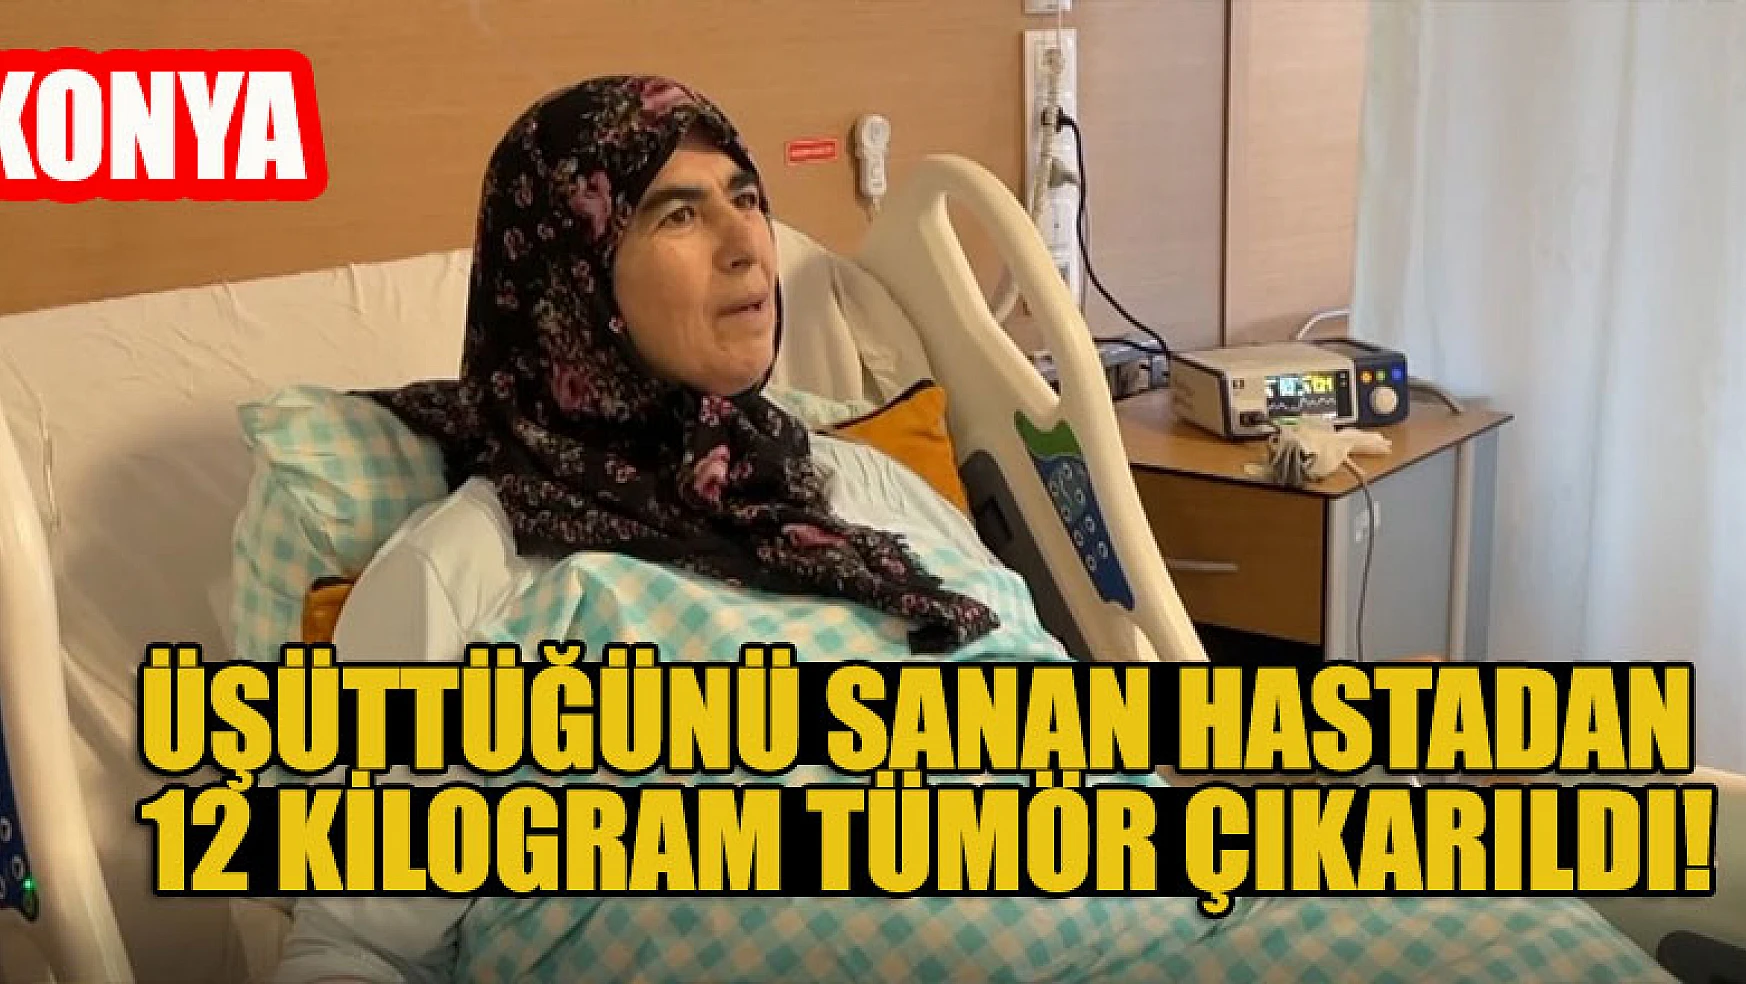 Konya'da üşüttüğünü sanan hastadan 12 kilogram tümör çıkarıldı